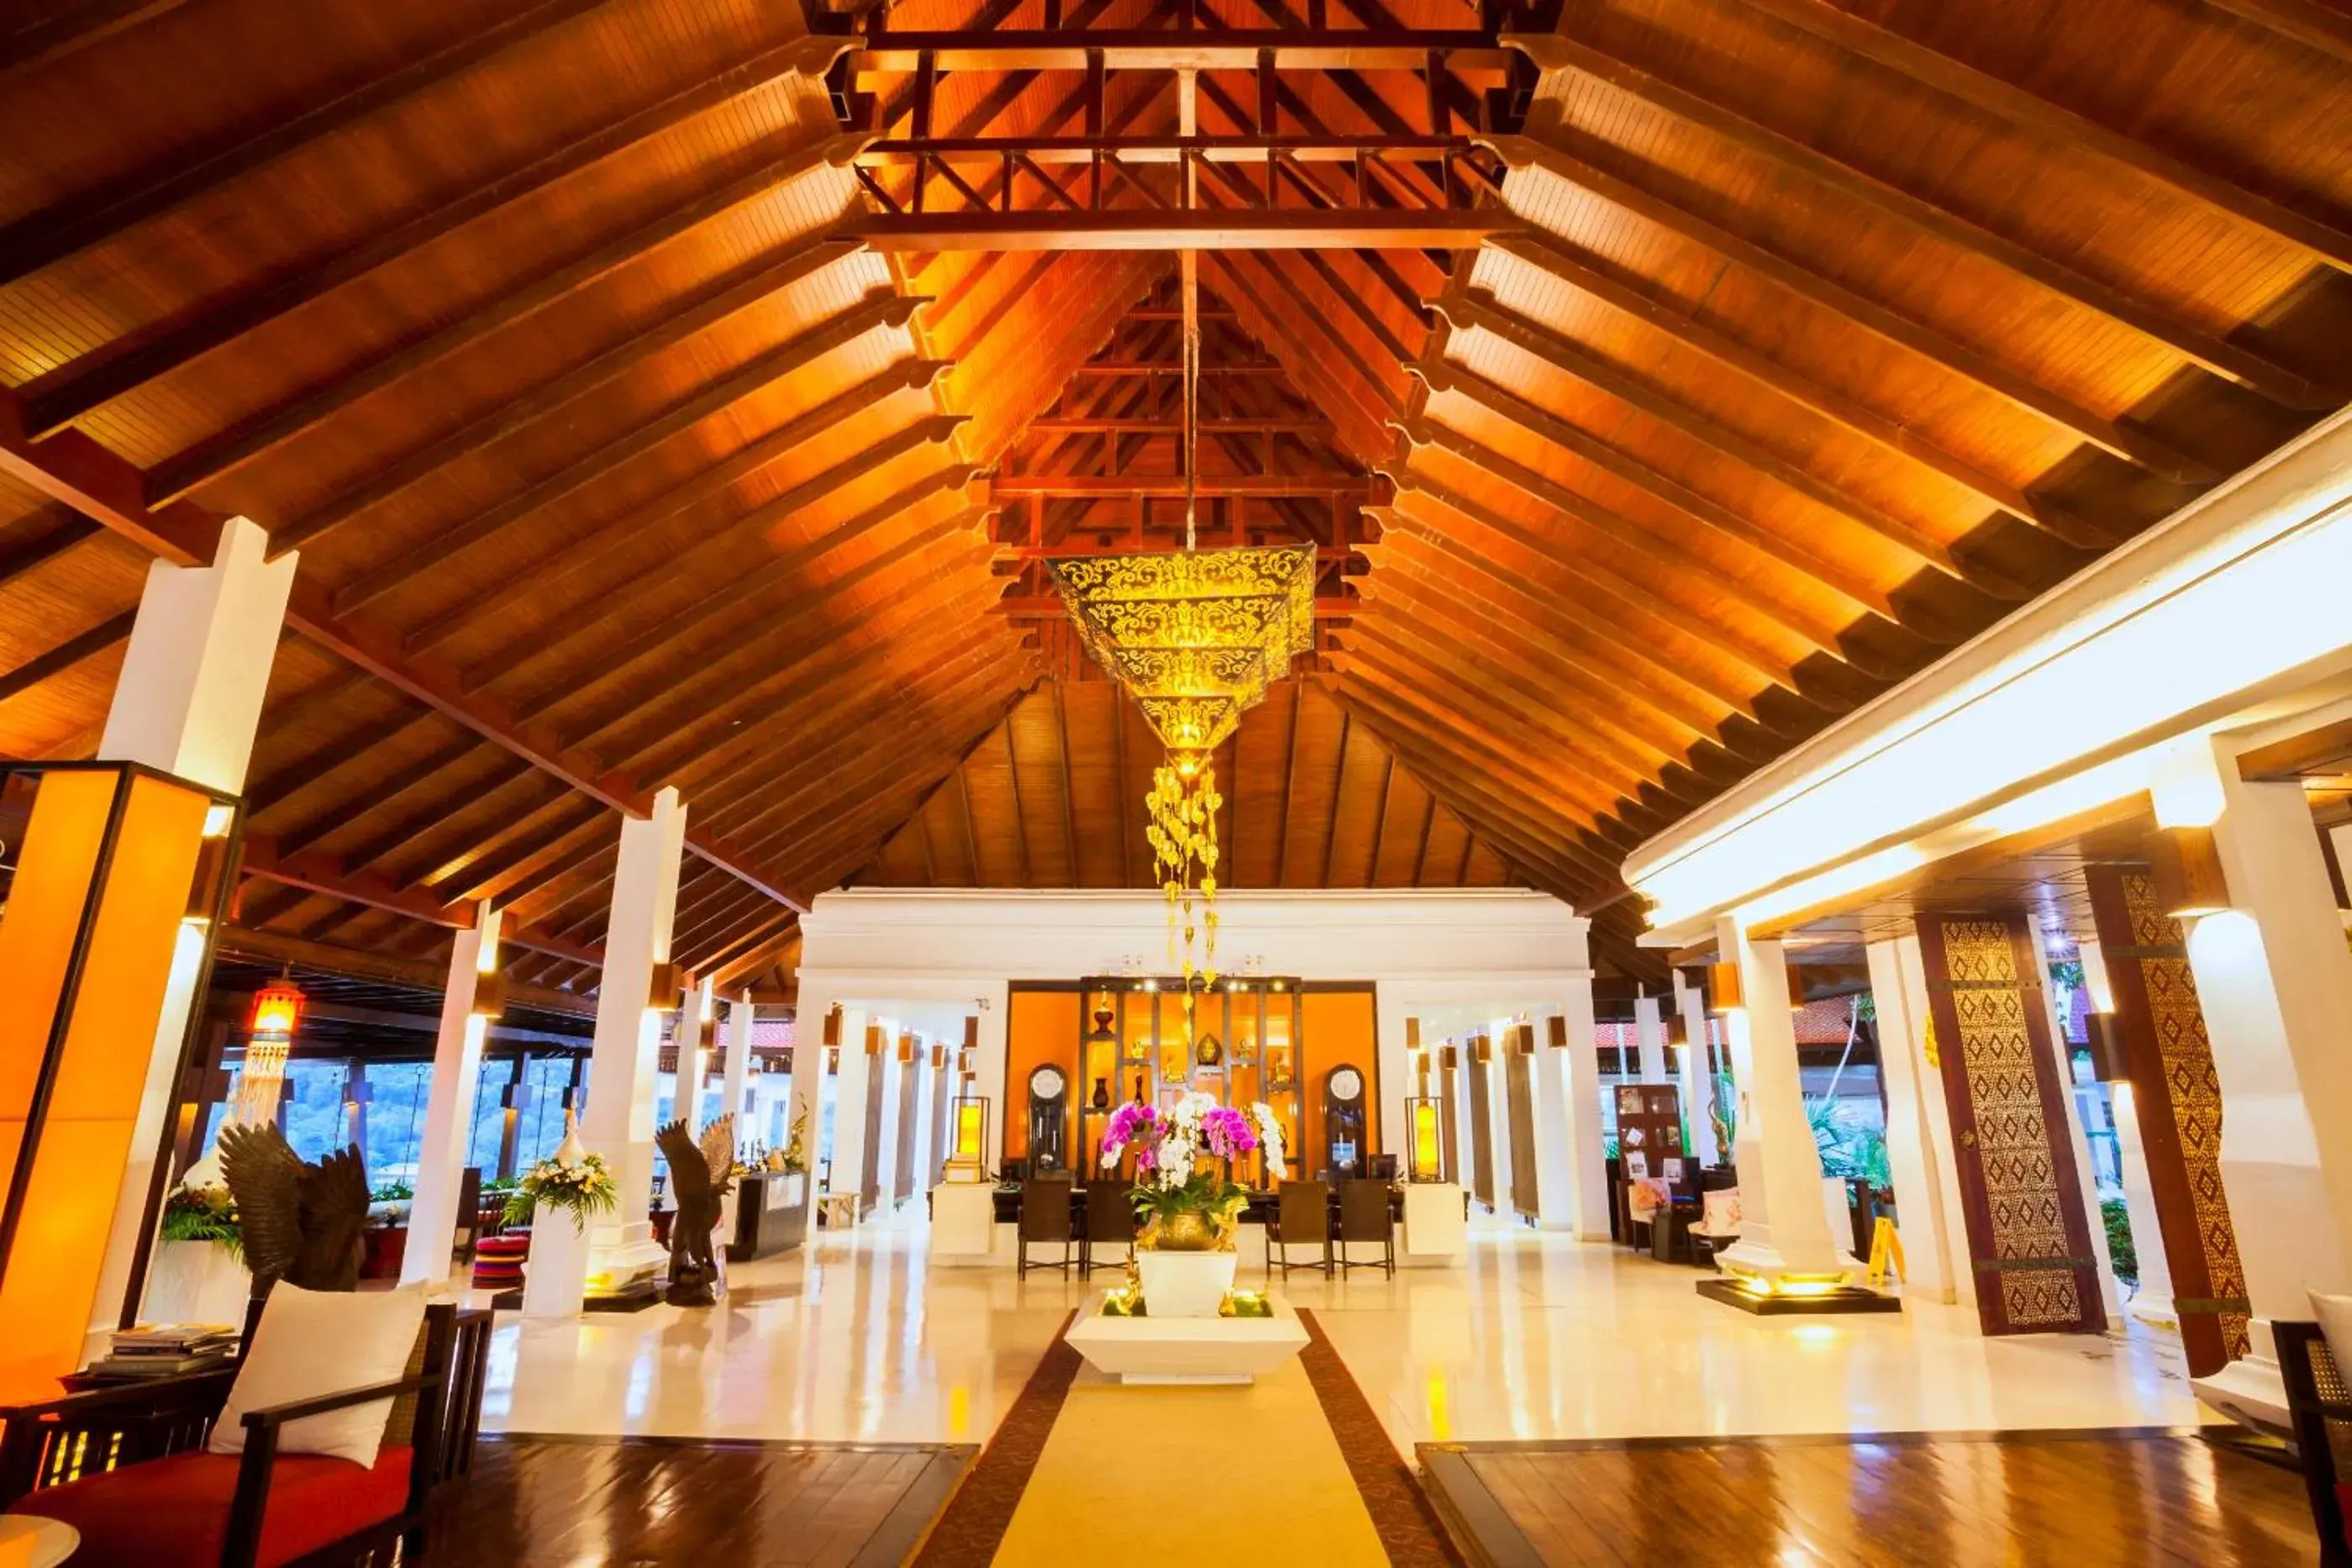 Lobby or reception, Banquet Facilities in Panviman Chiang Mai Spa Resort